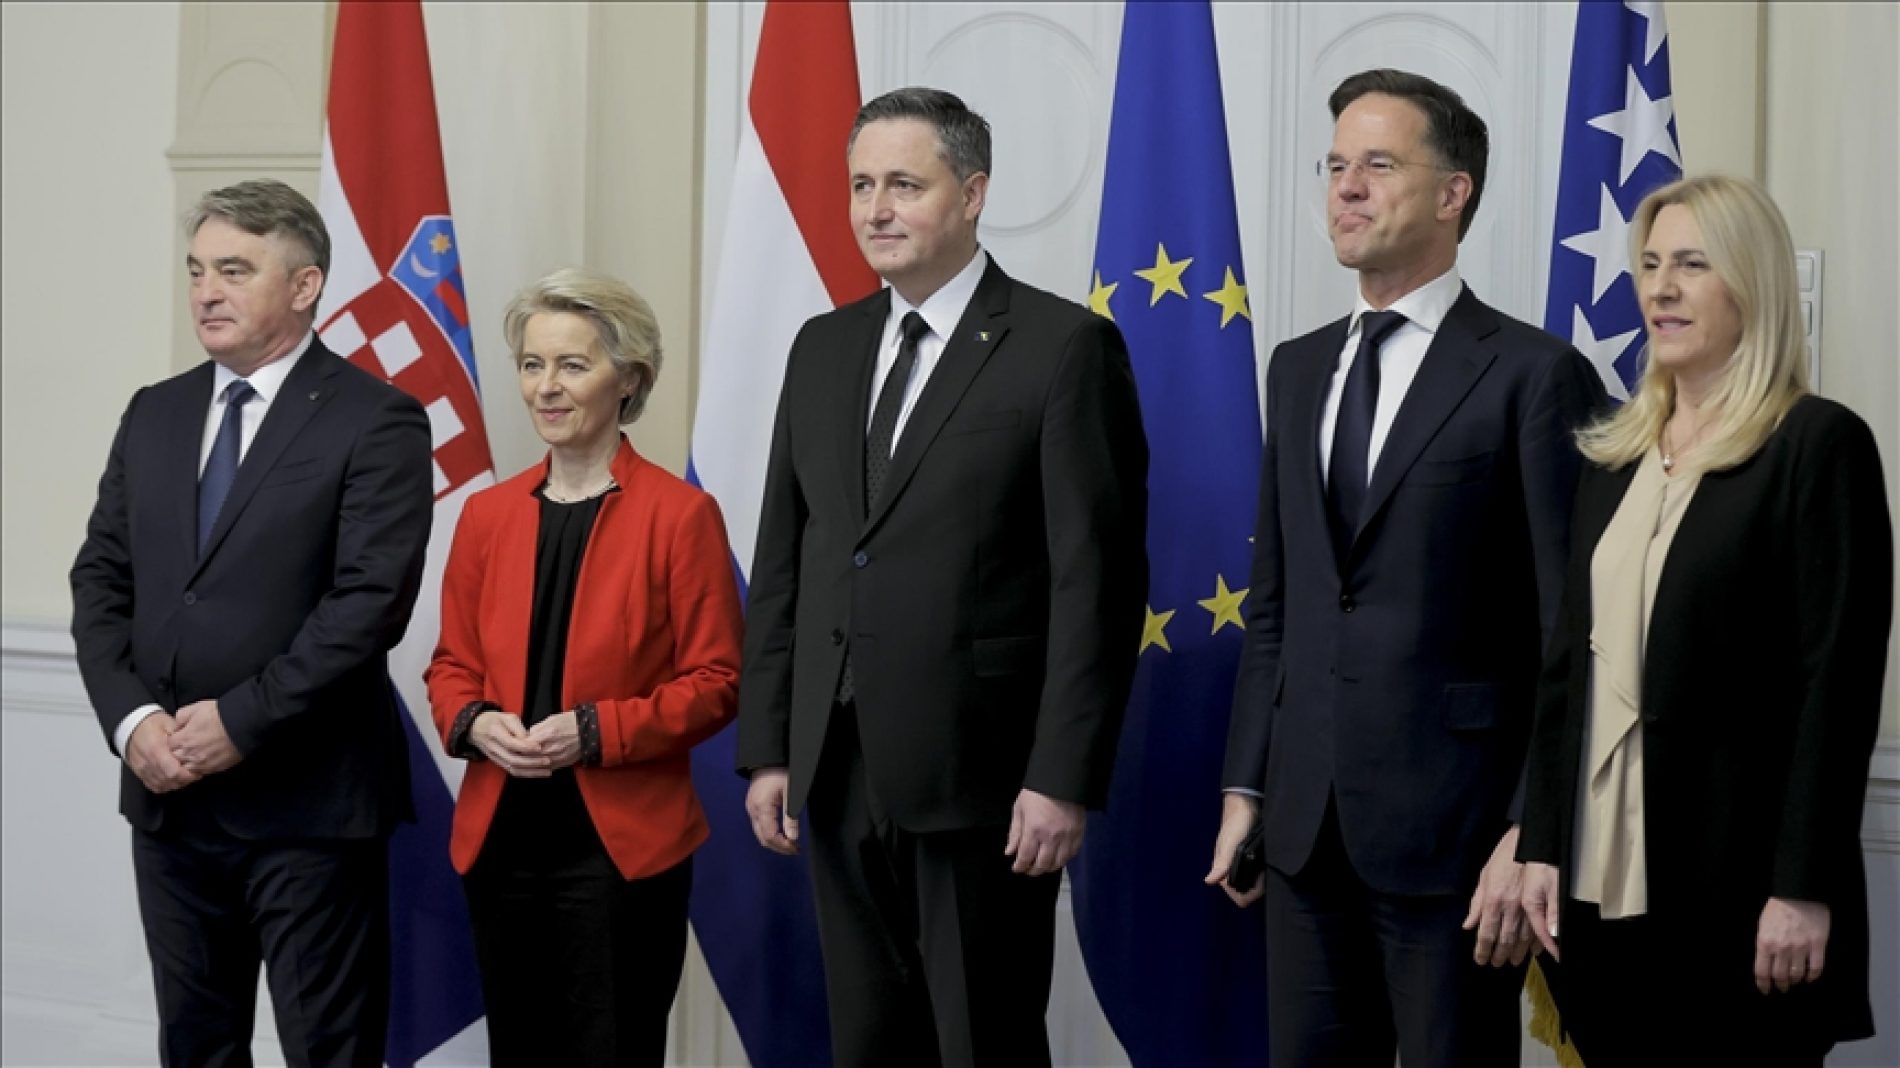 Diplomatski cirkus u režiji zvanične delegacije Evropske unije